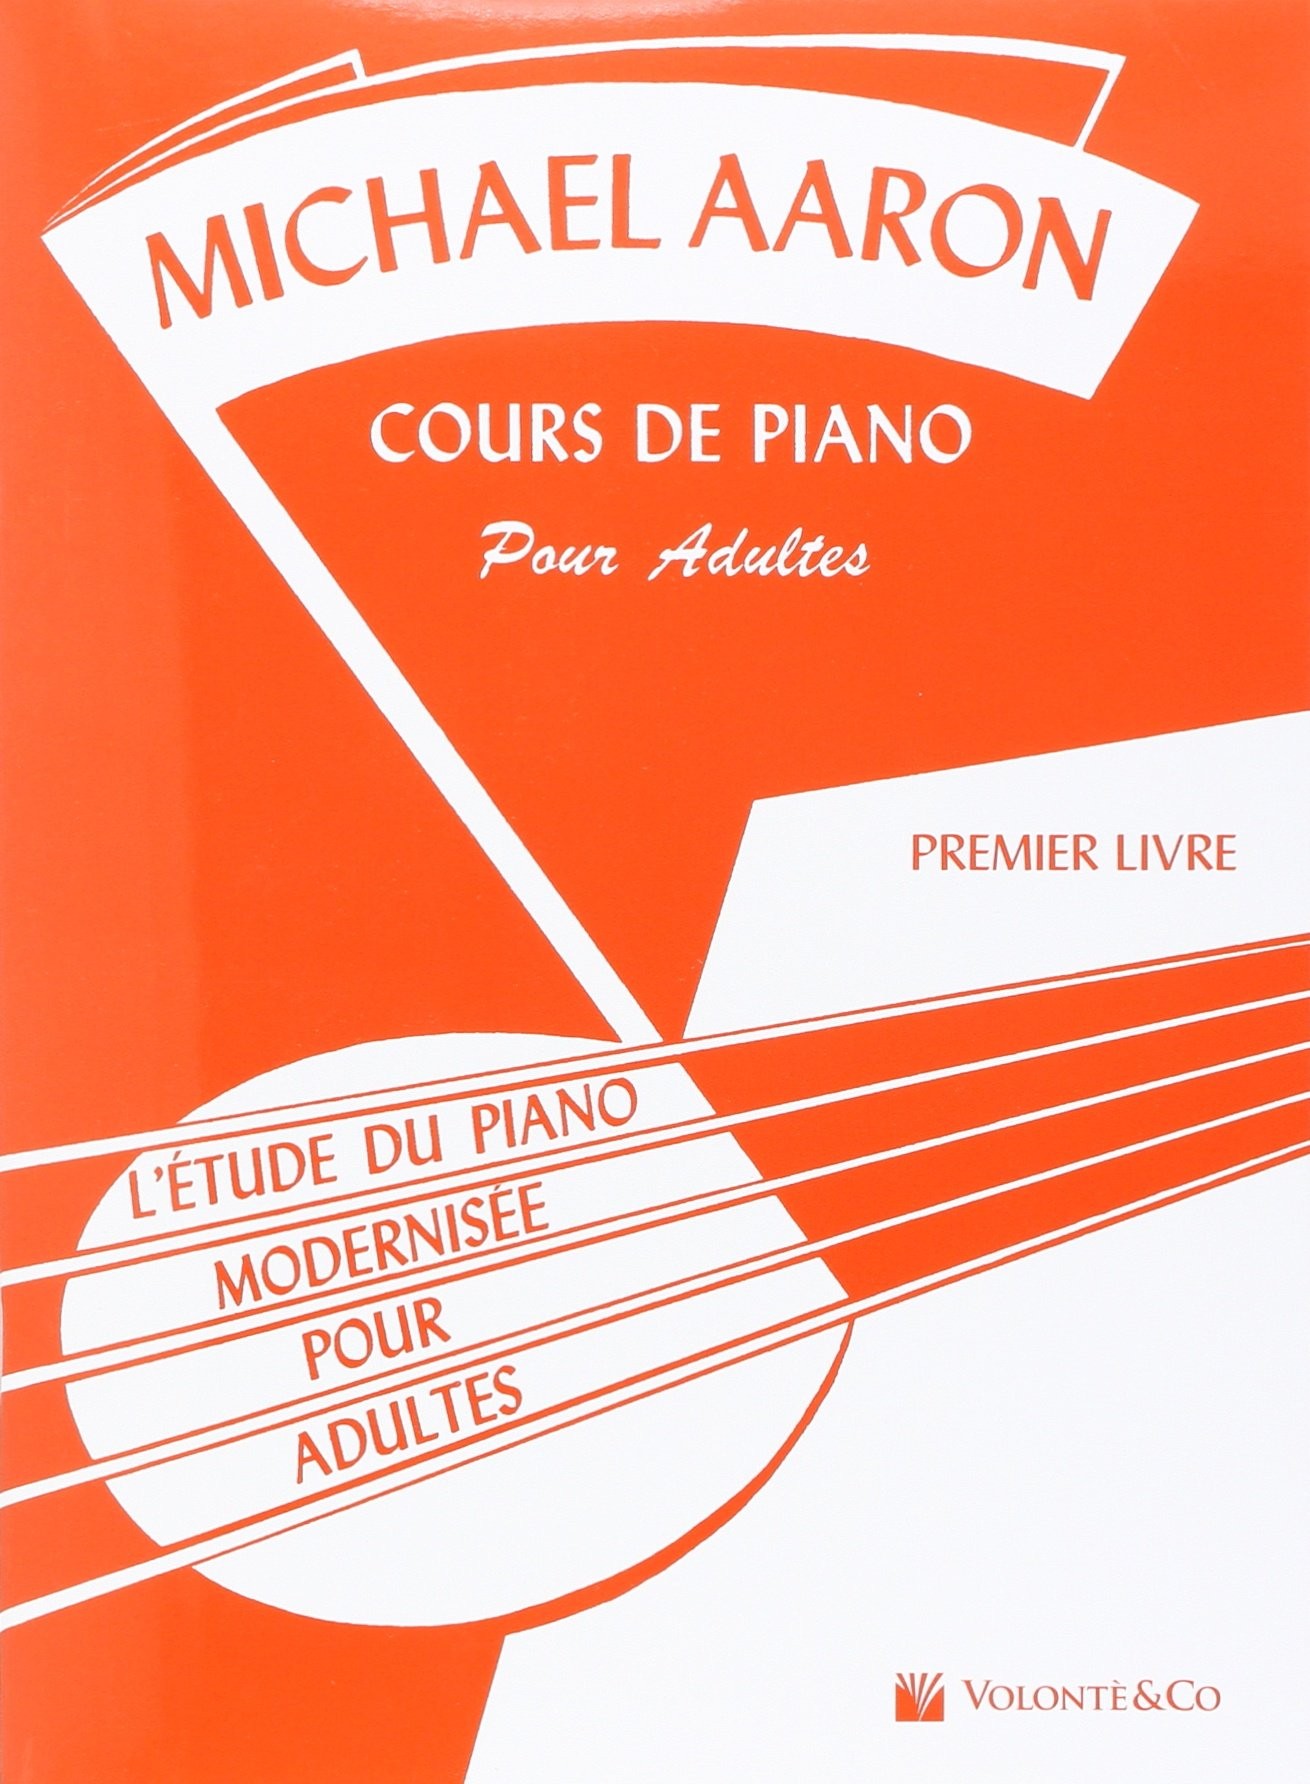 Aaron - Méthode de piano - Cours de piano pour adultes - Premier livre -  L'Atelier du Piano